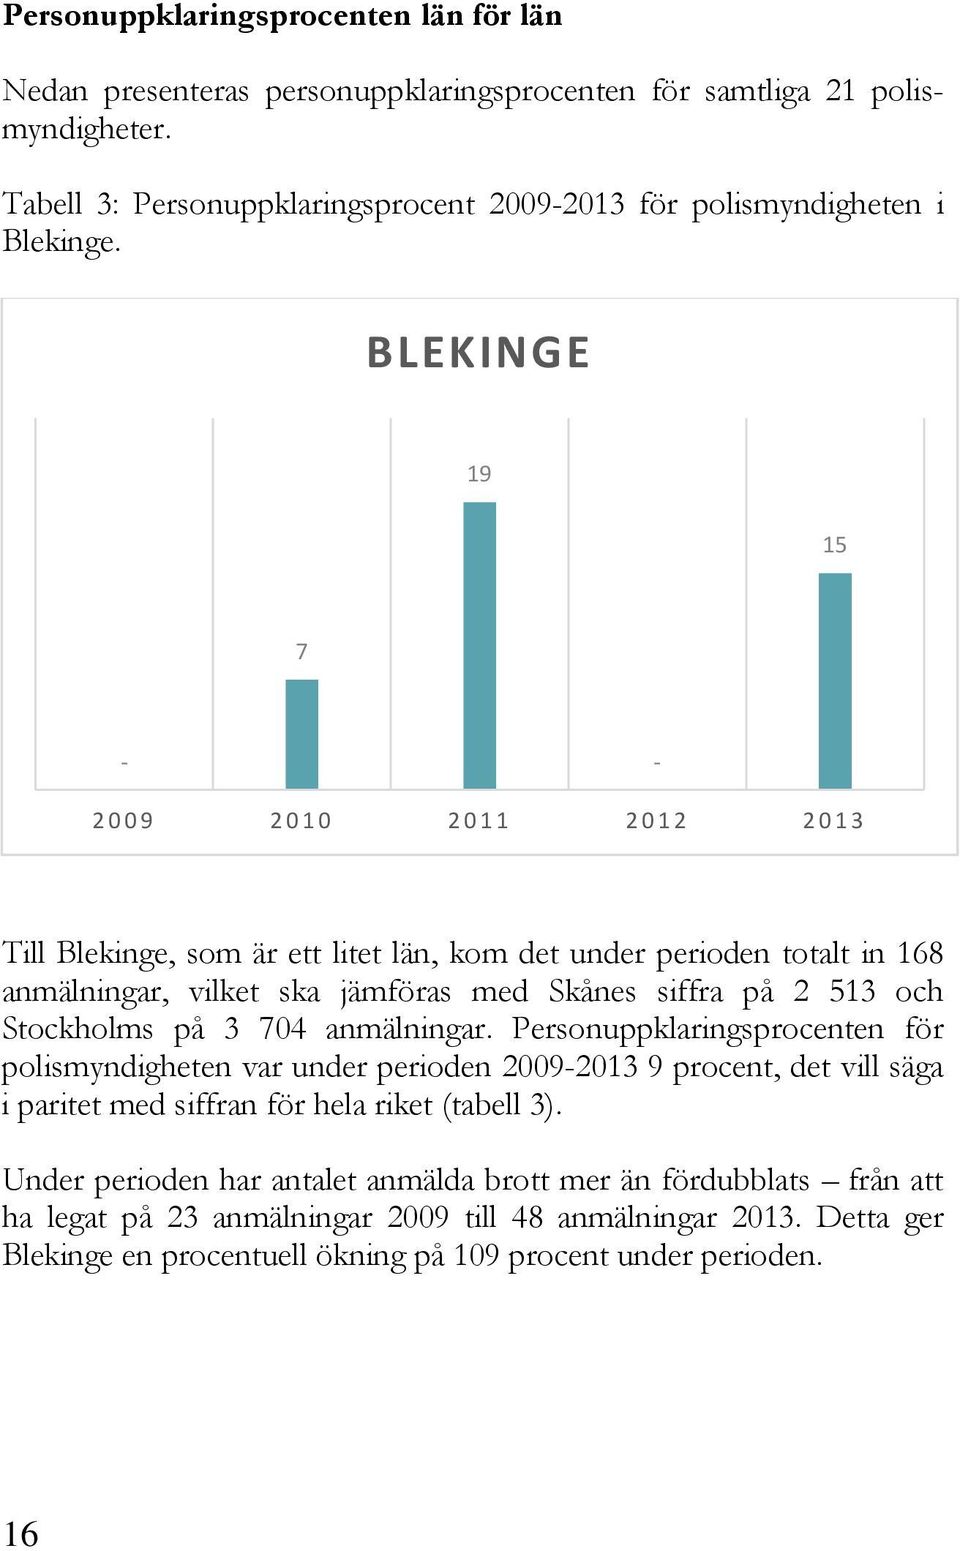 BLEKINGE 19 15 7 - - 2009 2010 2011 2012 2013 Till Blekinge, som är ett litet län, kom det under perioden totalt in 168 anmälningar, vilket ska jämföras med Skånes siffra på 2 513 och